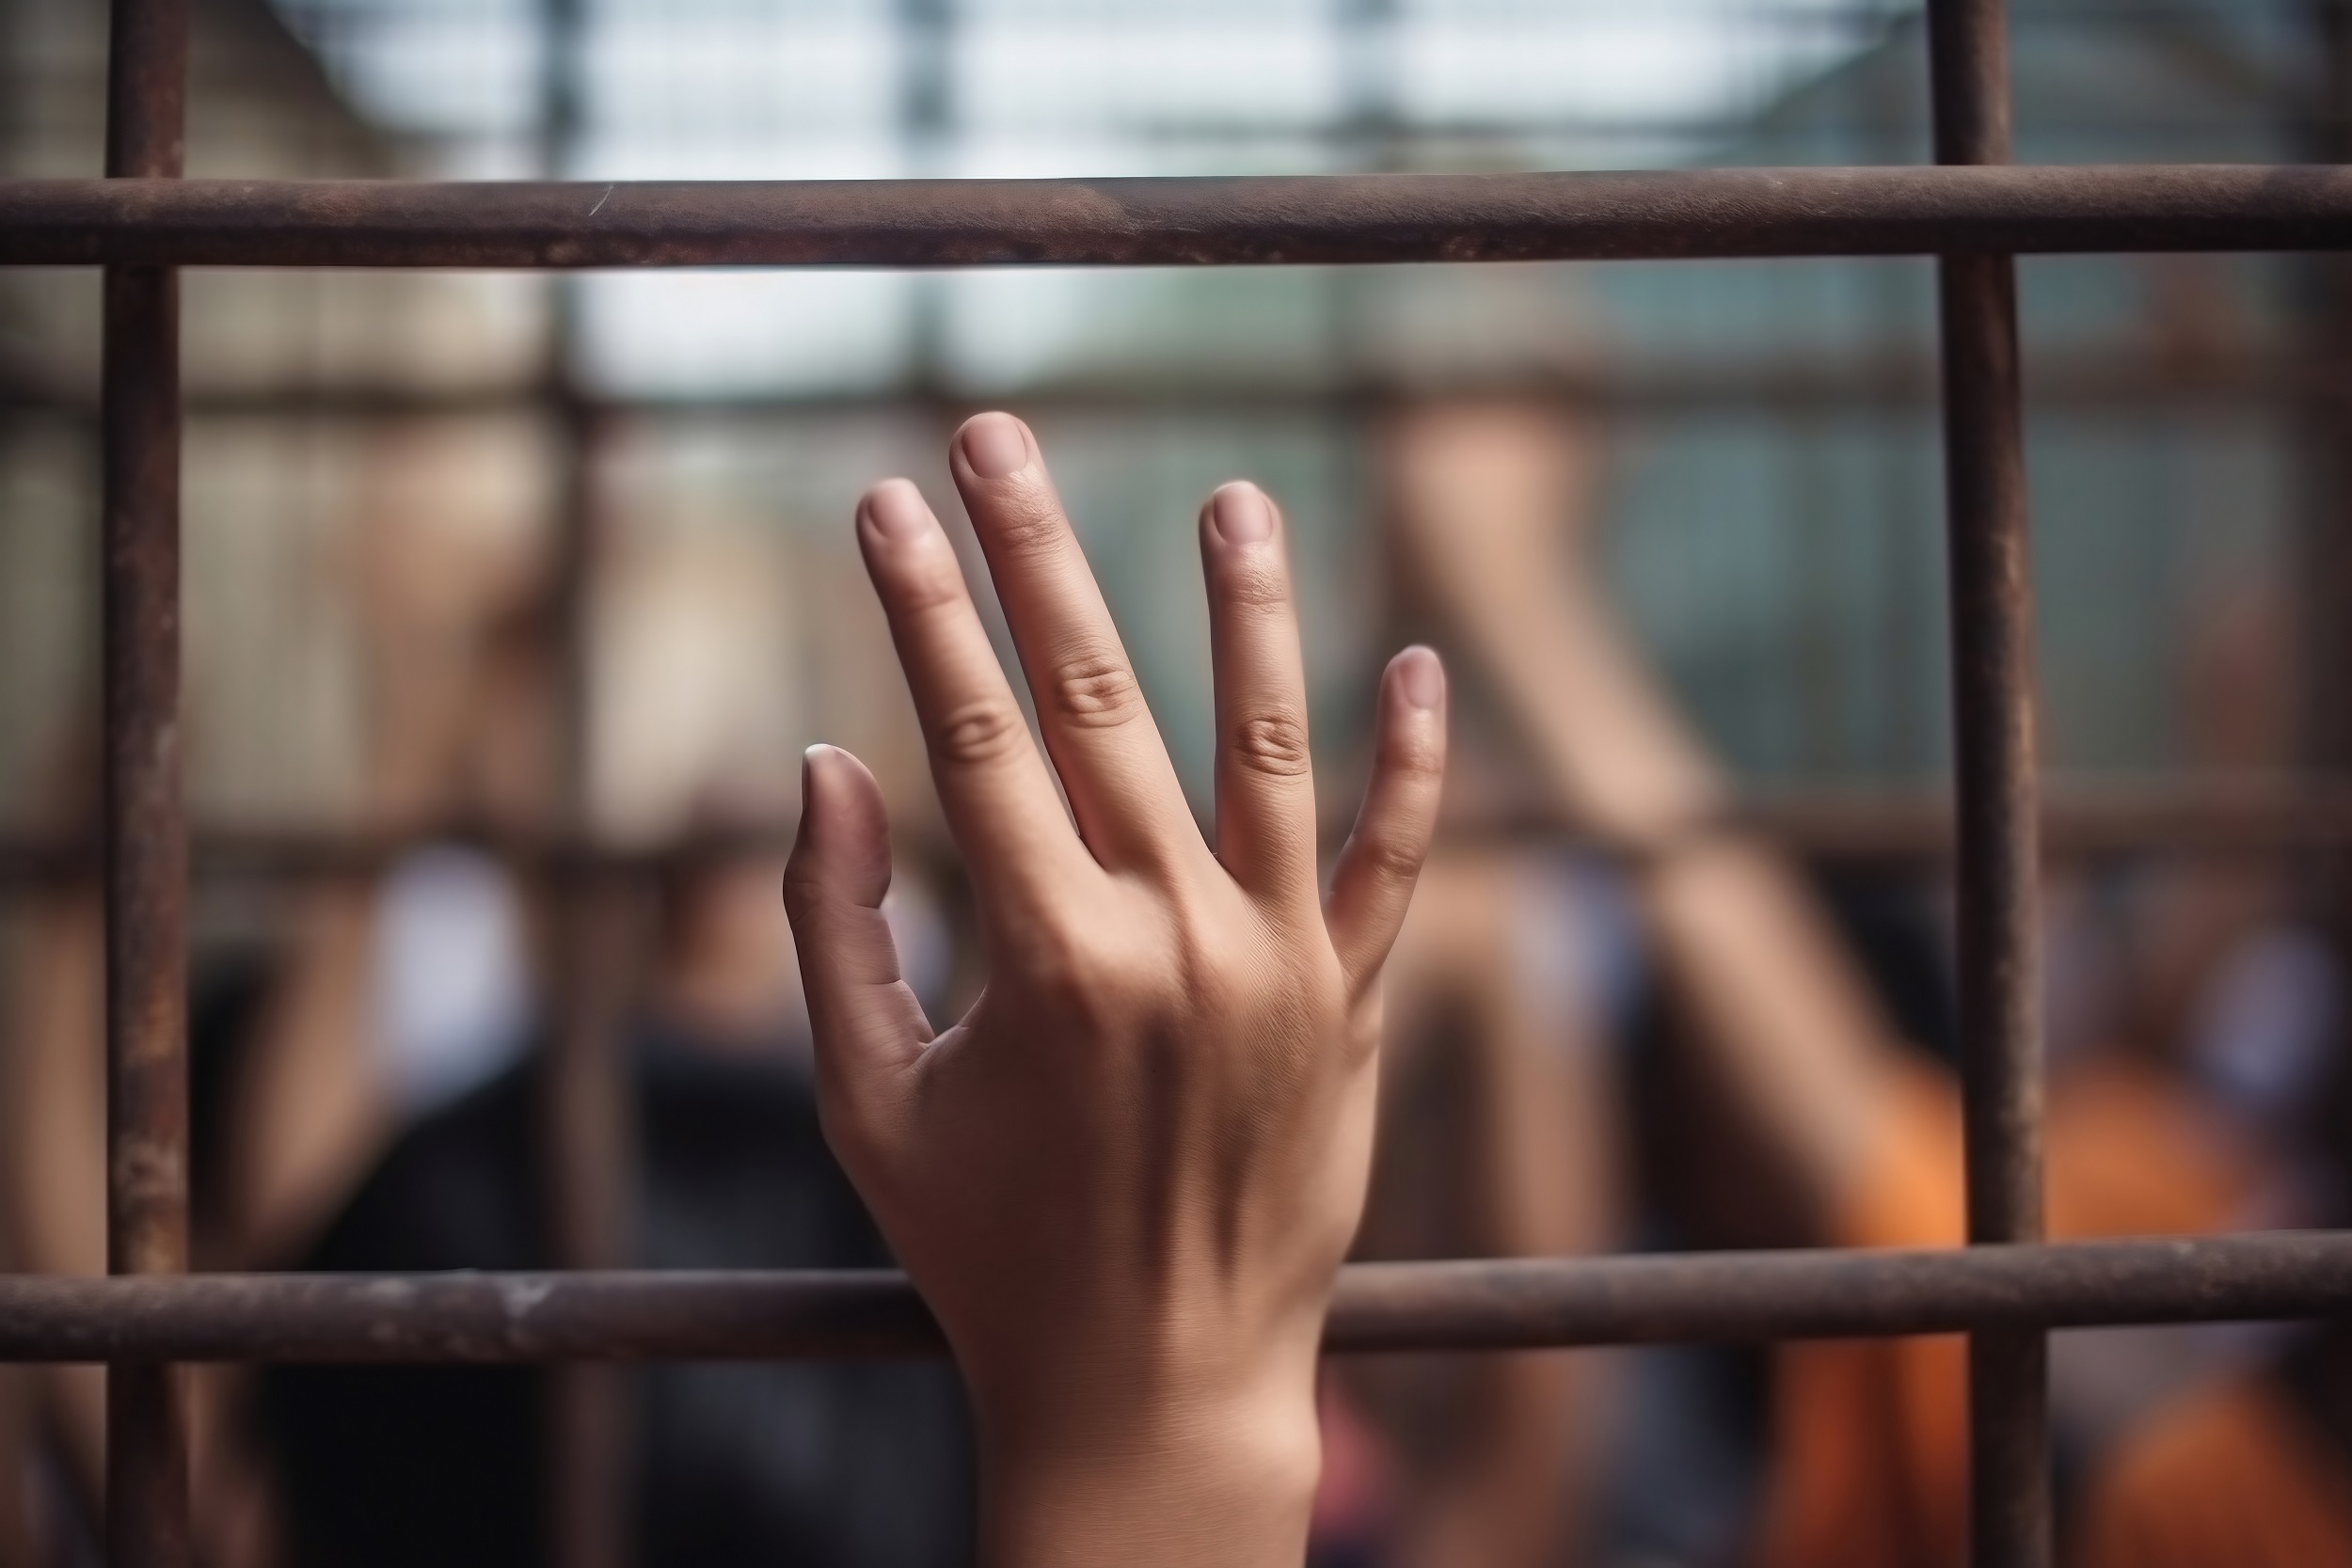 La primera vez que un tribunal internacional de derechos humanos abordó un caso sobre mujeres en prisión